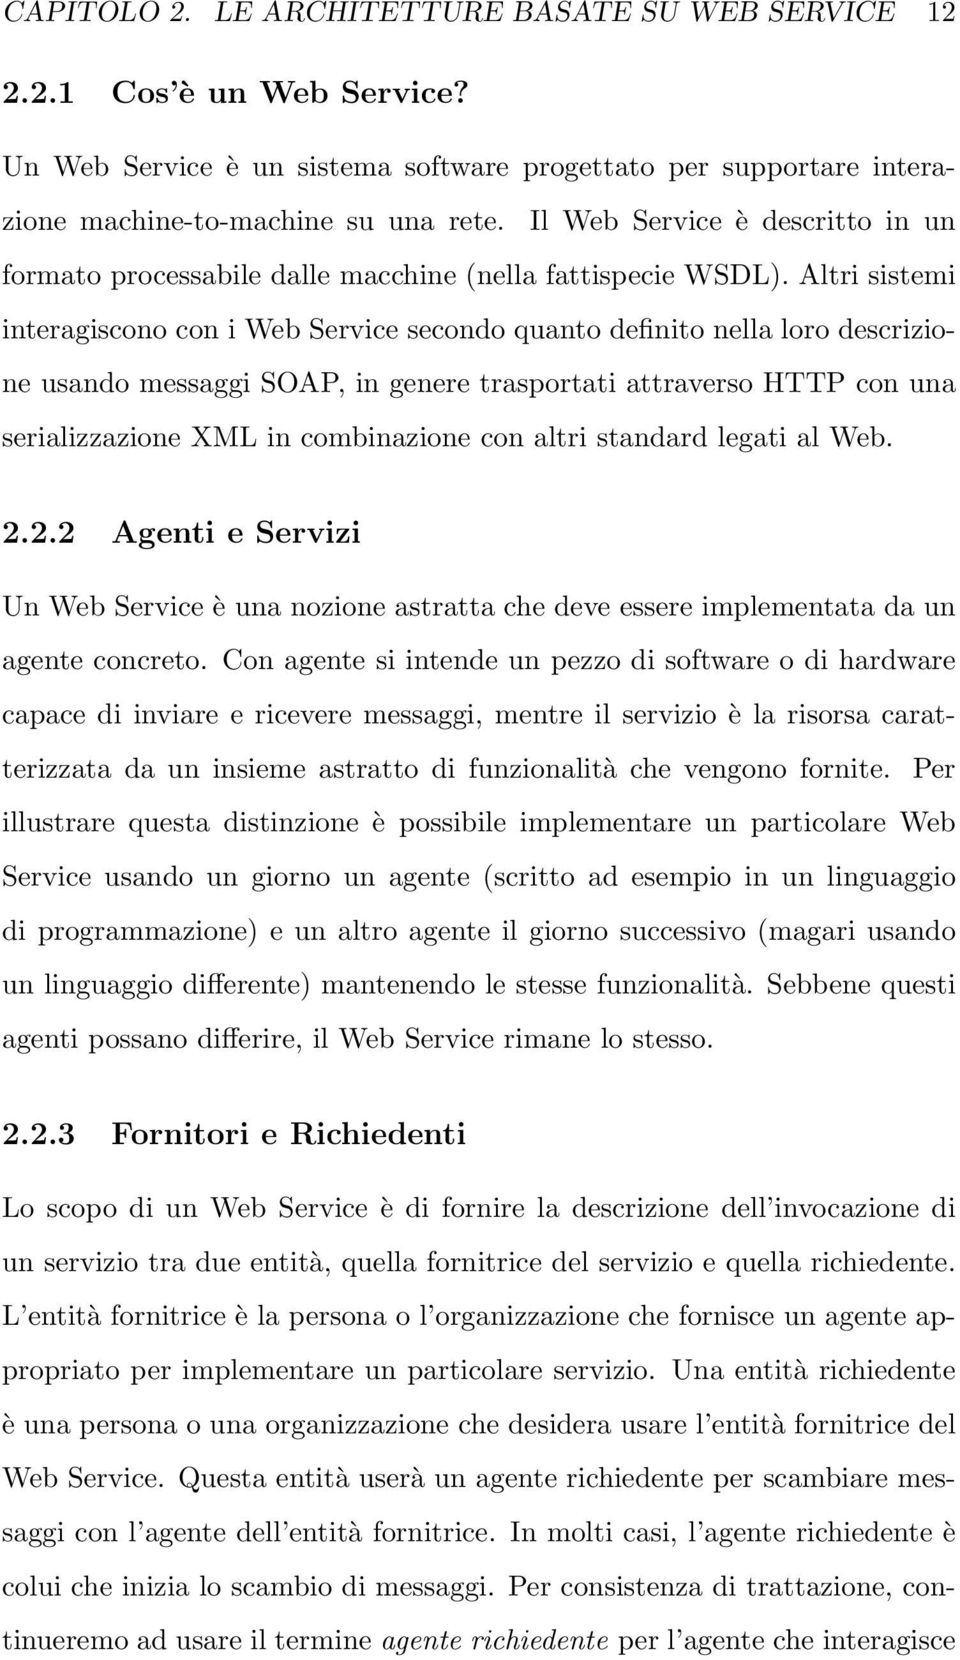 Altri sistemi interagiscono con i Web Service secondo quanto definito nella loro descrizione usando messaggi SOAP, in genere trasportati attraverso HTTP con una serializzazione XML in combinazione